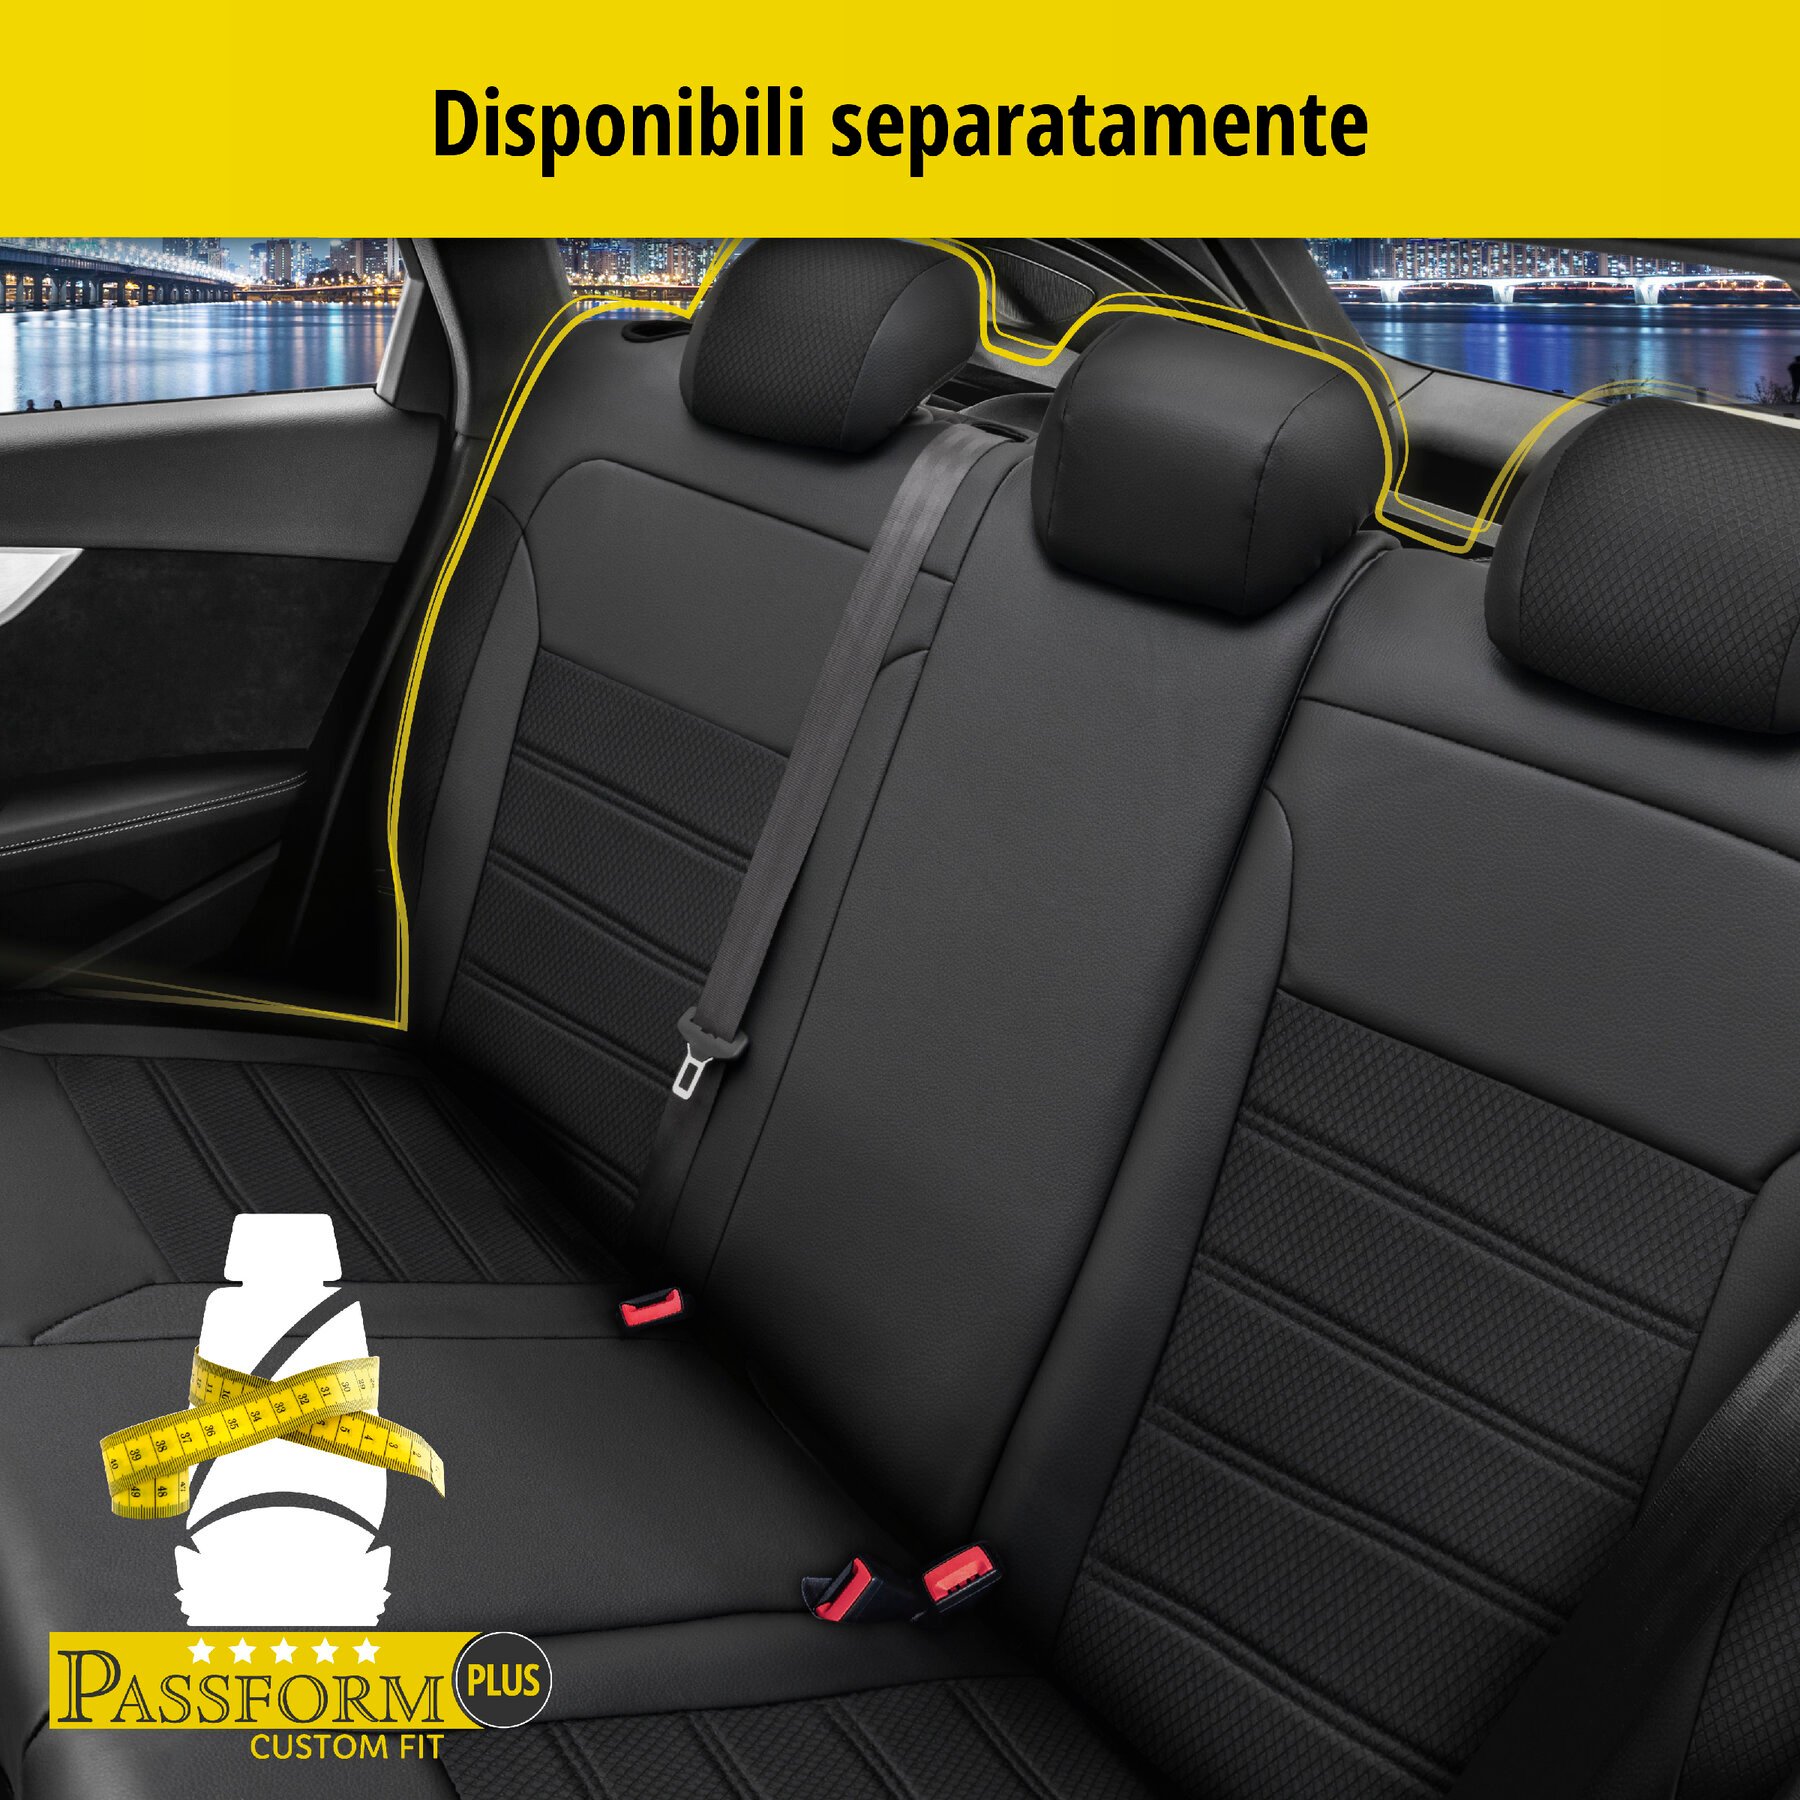 Coprisedili Aversa per BMW X1 (E84) 03/2009-06/2015, 2 coprisedili per sedili normali